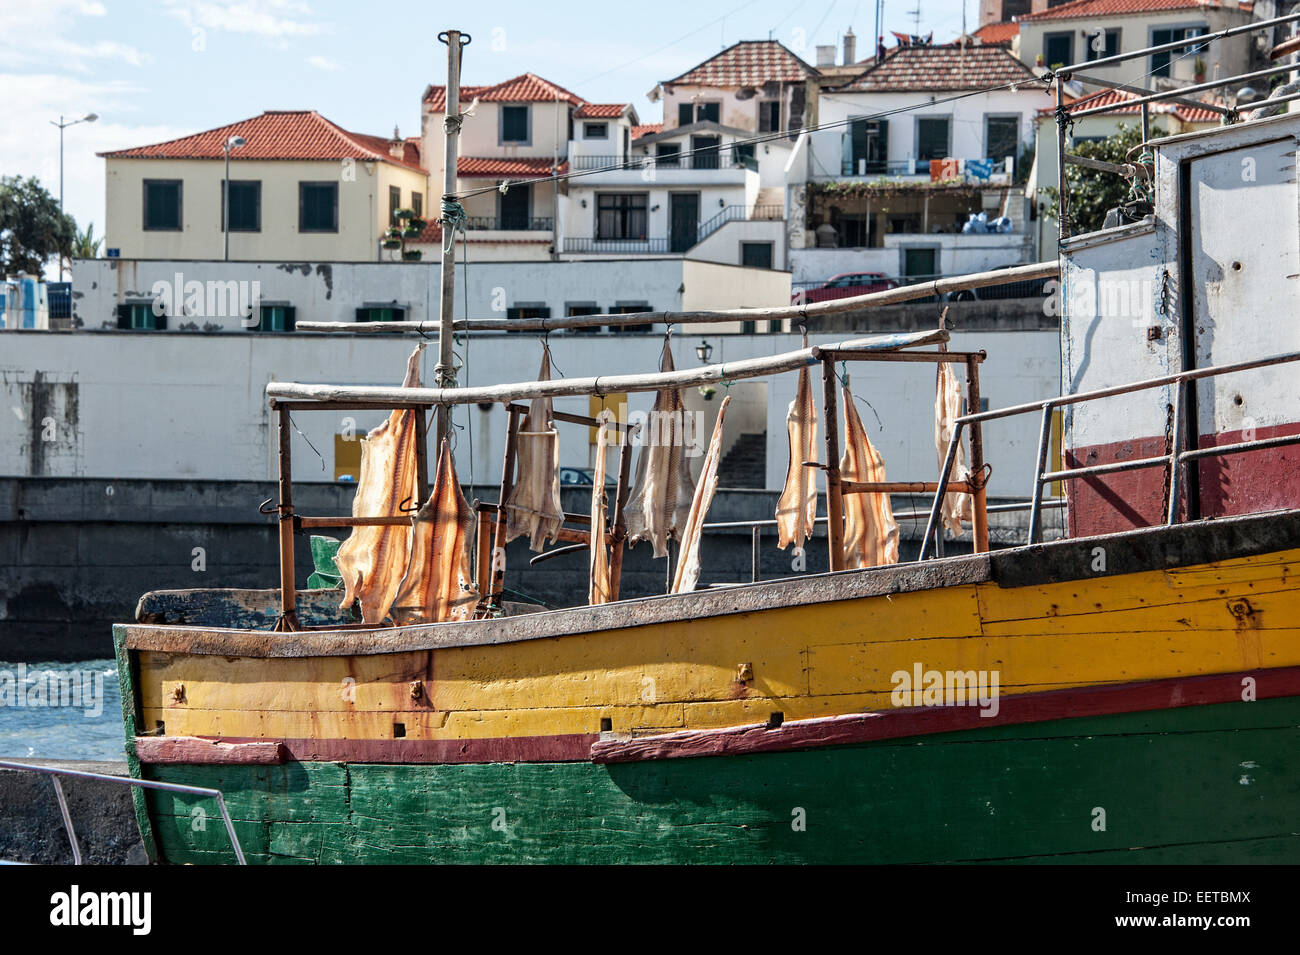 Reisen, Europa, Portugal, Madeira; Getrockneter Fisch, Stockfisch, Bacalhau auf einem Fischerboot im Hafen von Camara de Lobos. Stock Photo